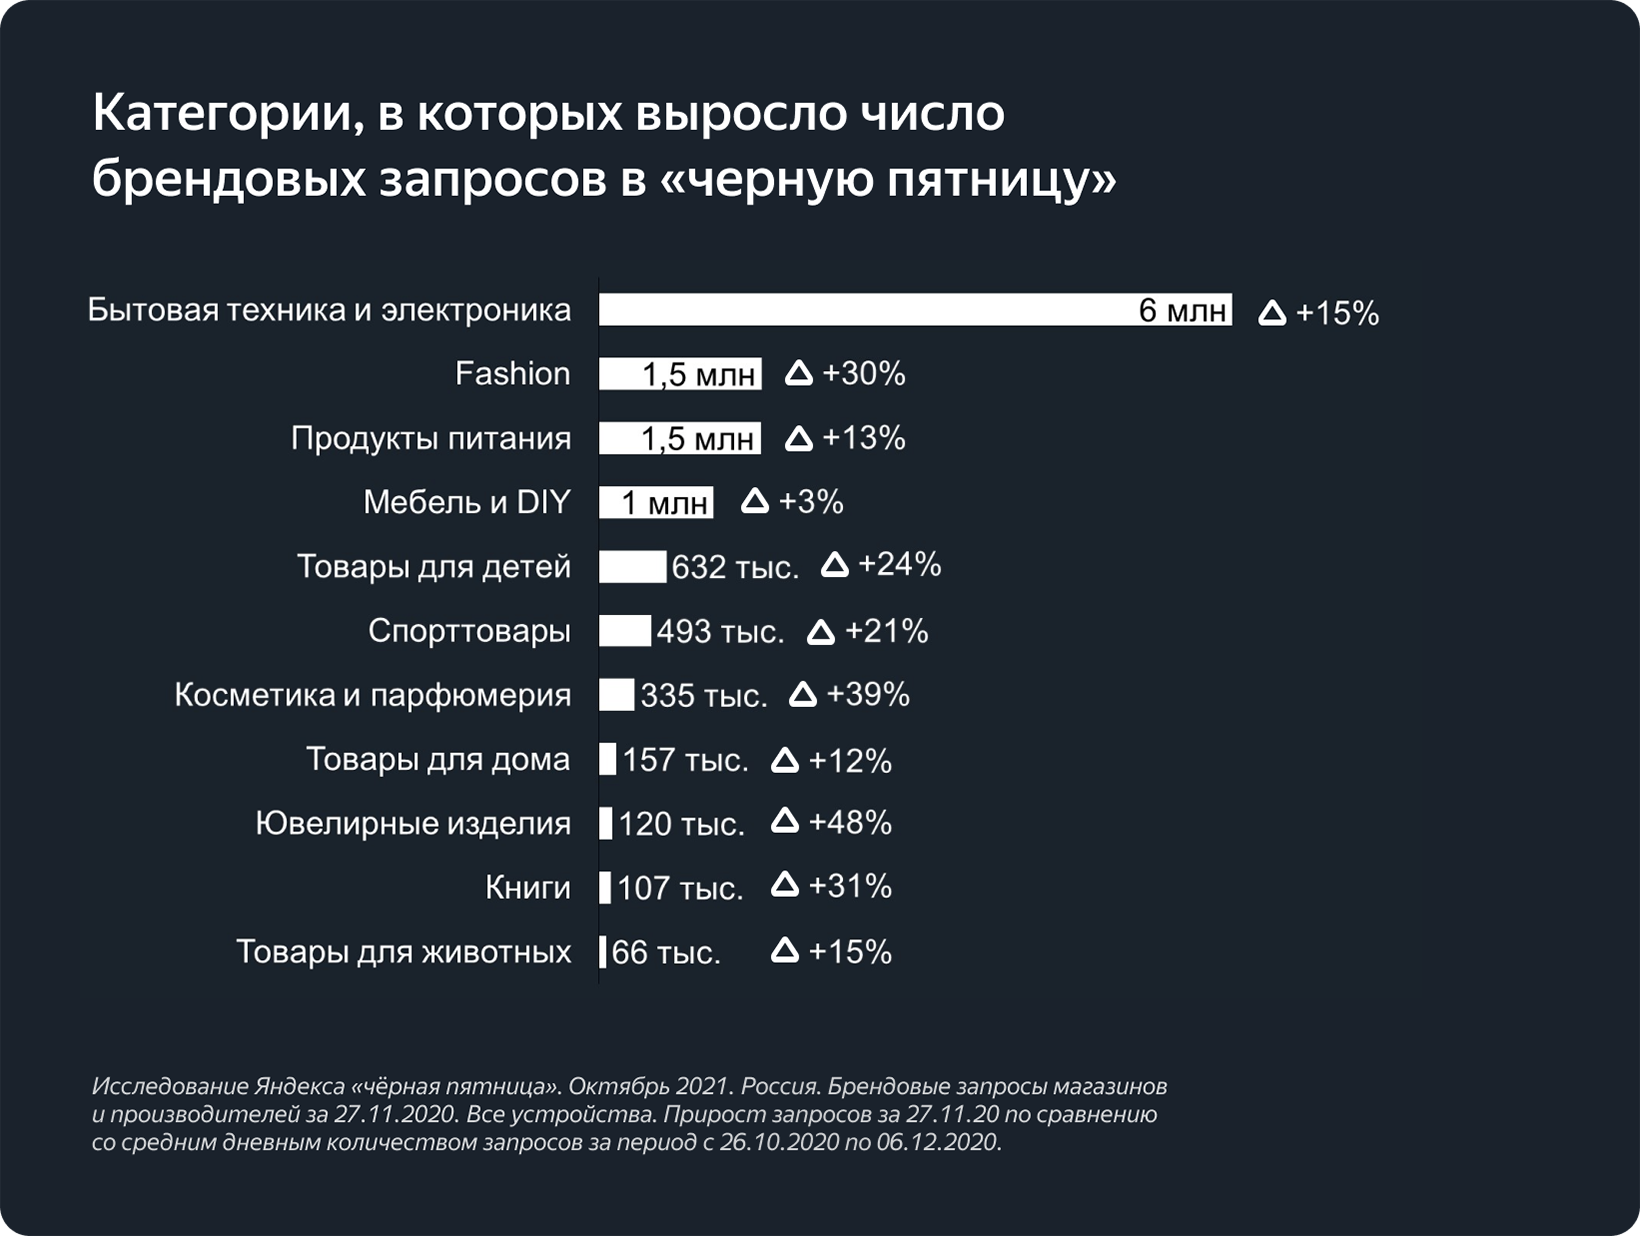 Яндекс провел исследование о поведении покупателей в Черную пятницу